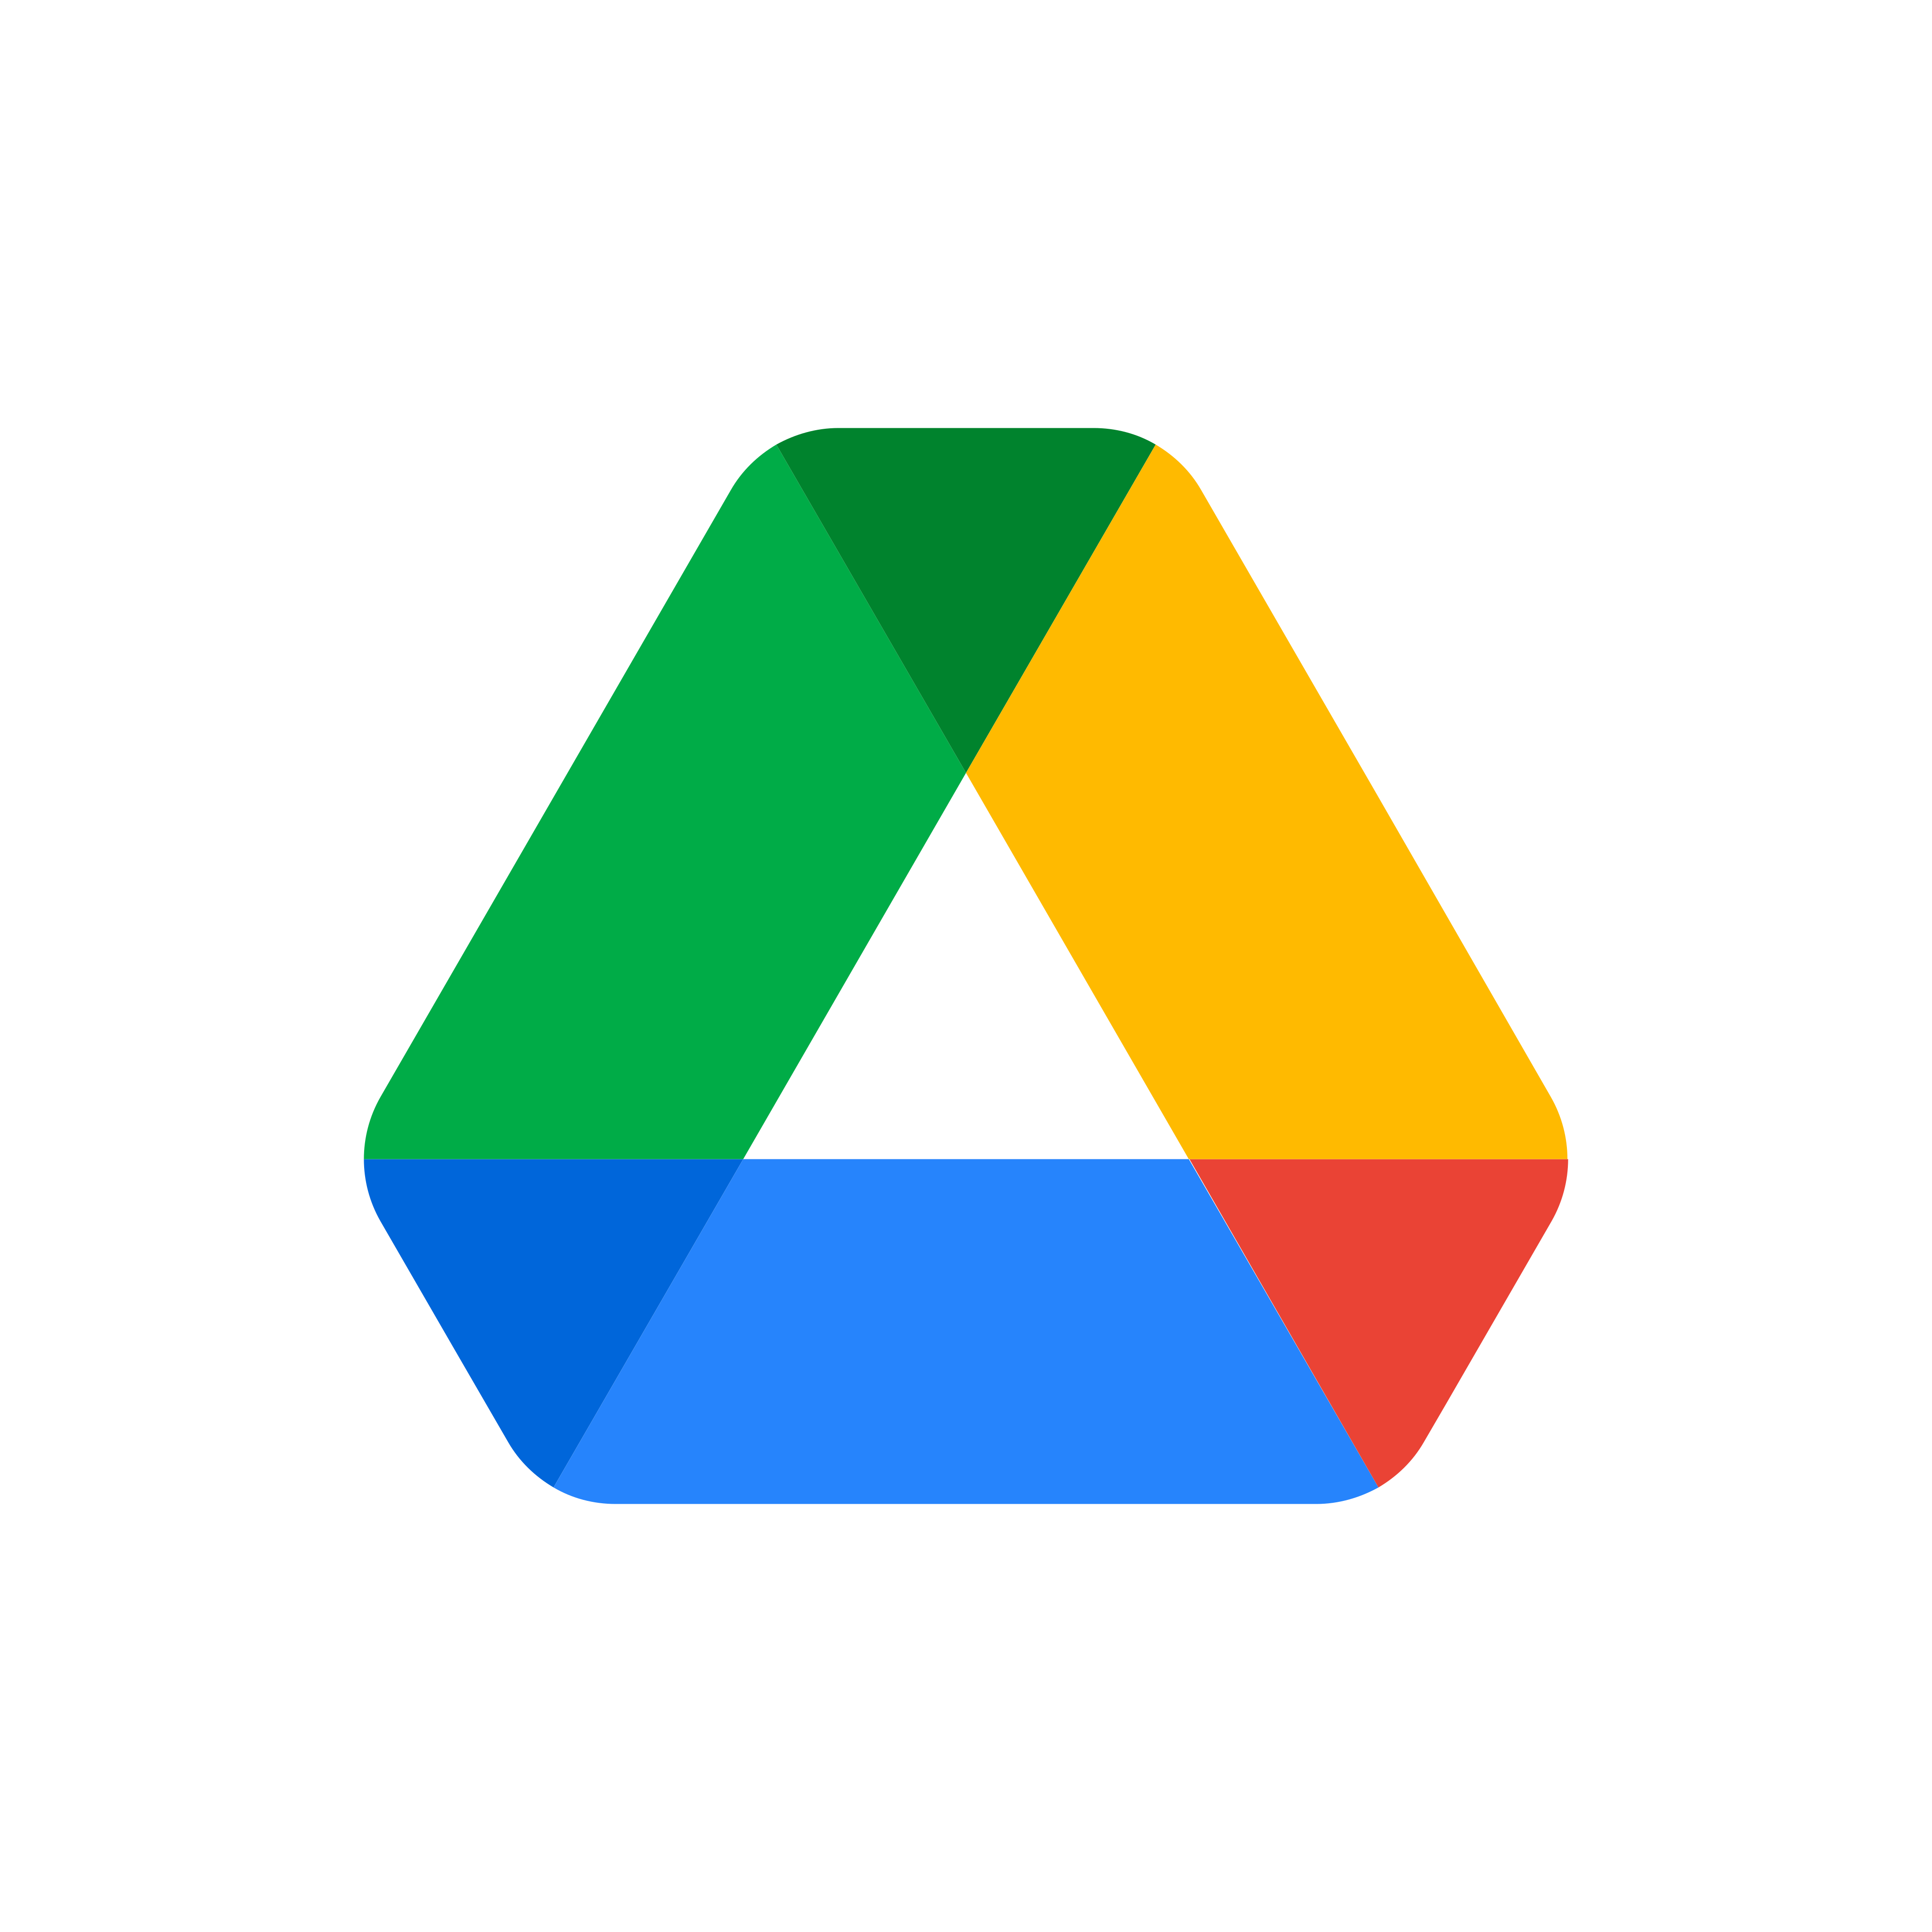 Logo do Google Drive